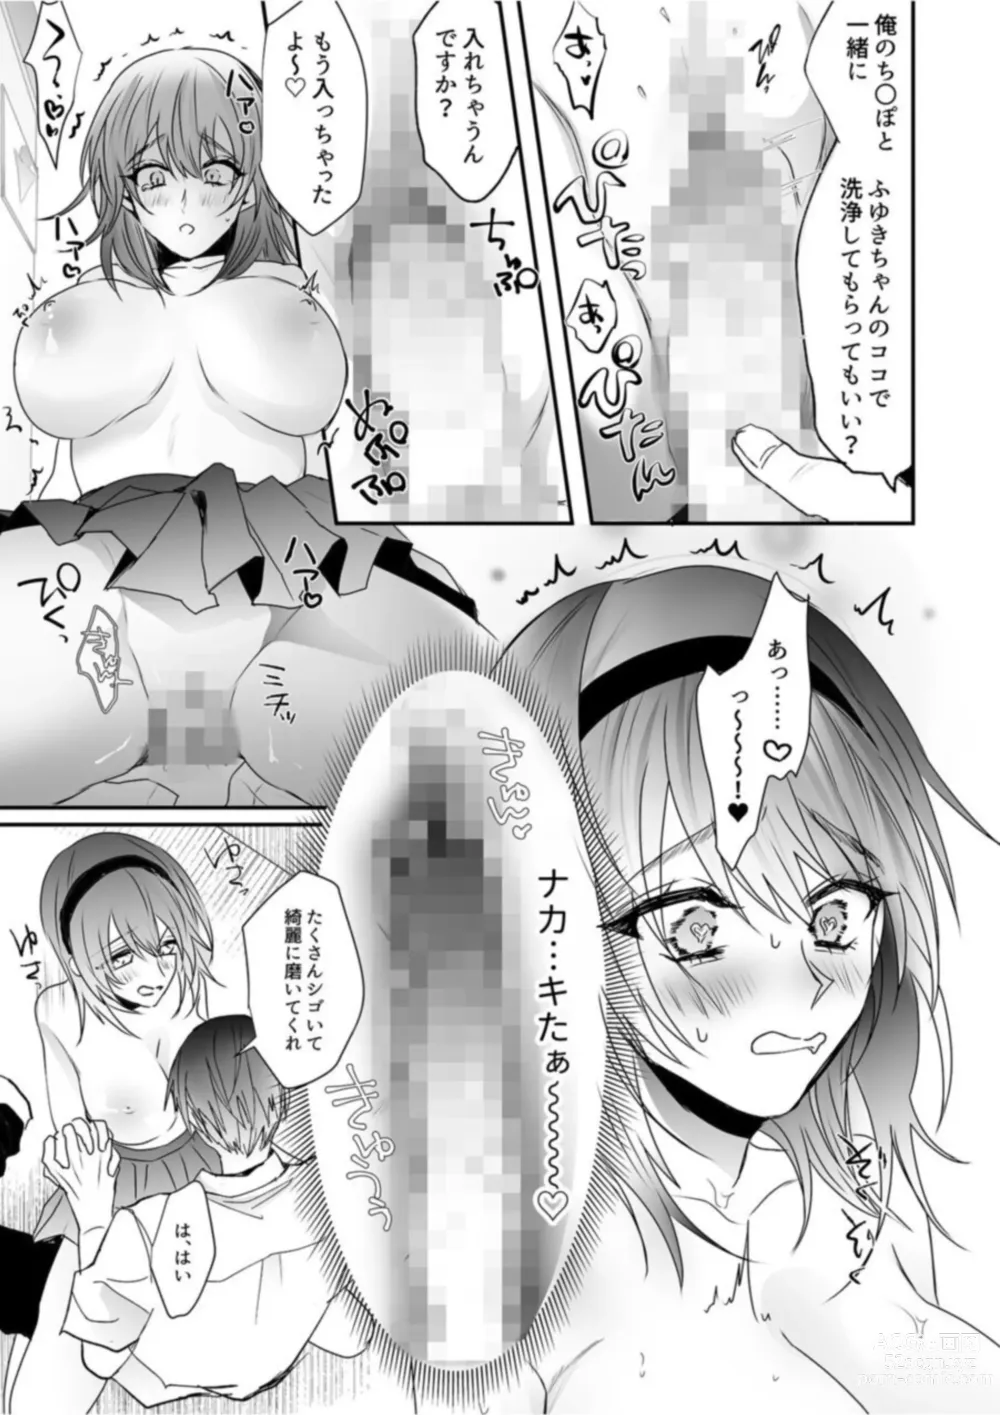 Page 21 of manga Chichiatsu Nadeshiko 1